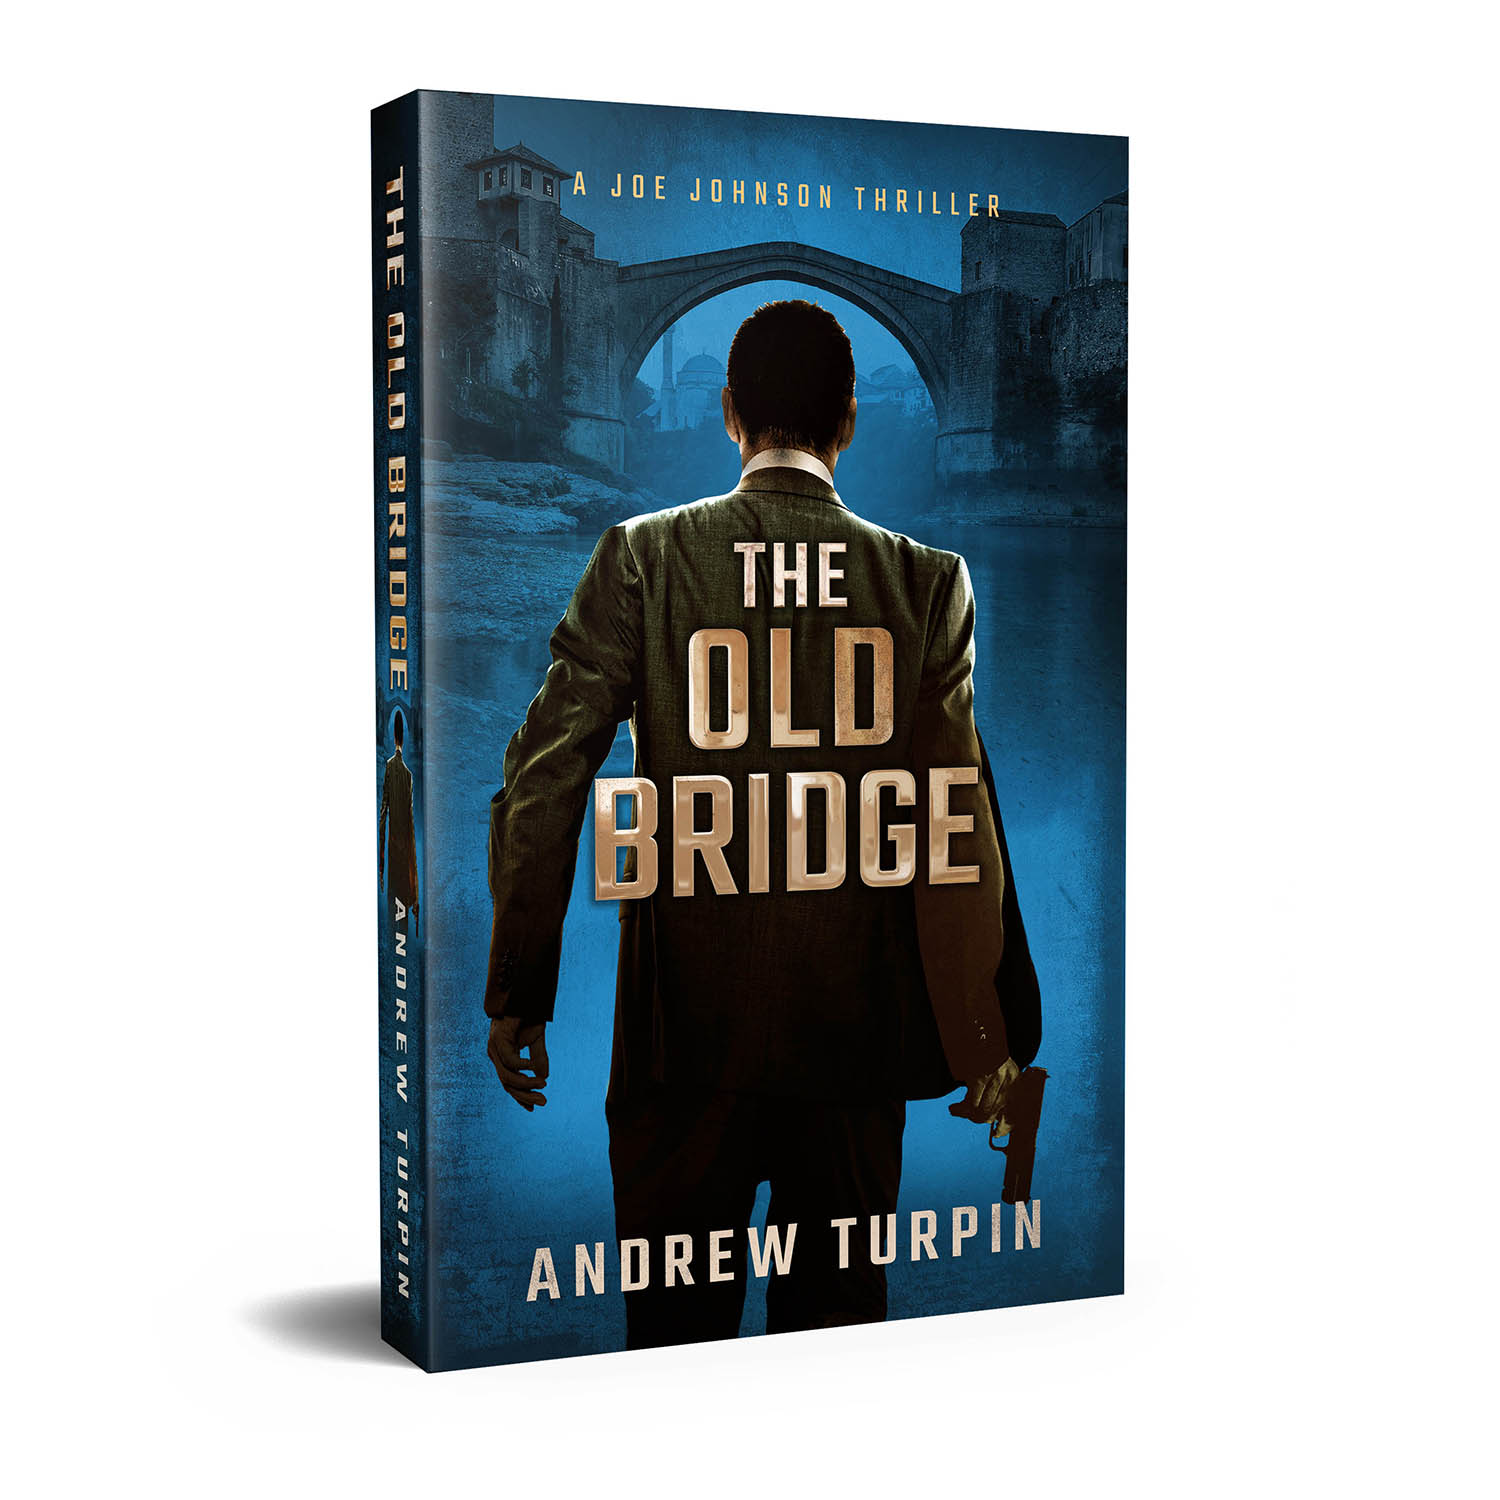 81 Best Seller Andrew Turpin Books In Order for business